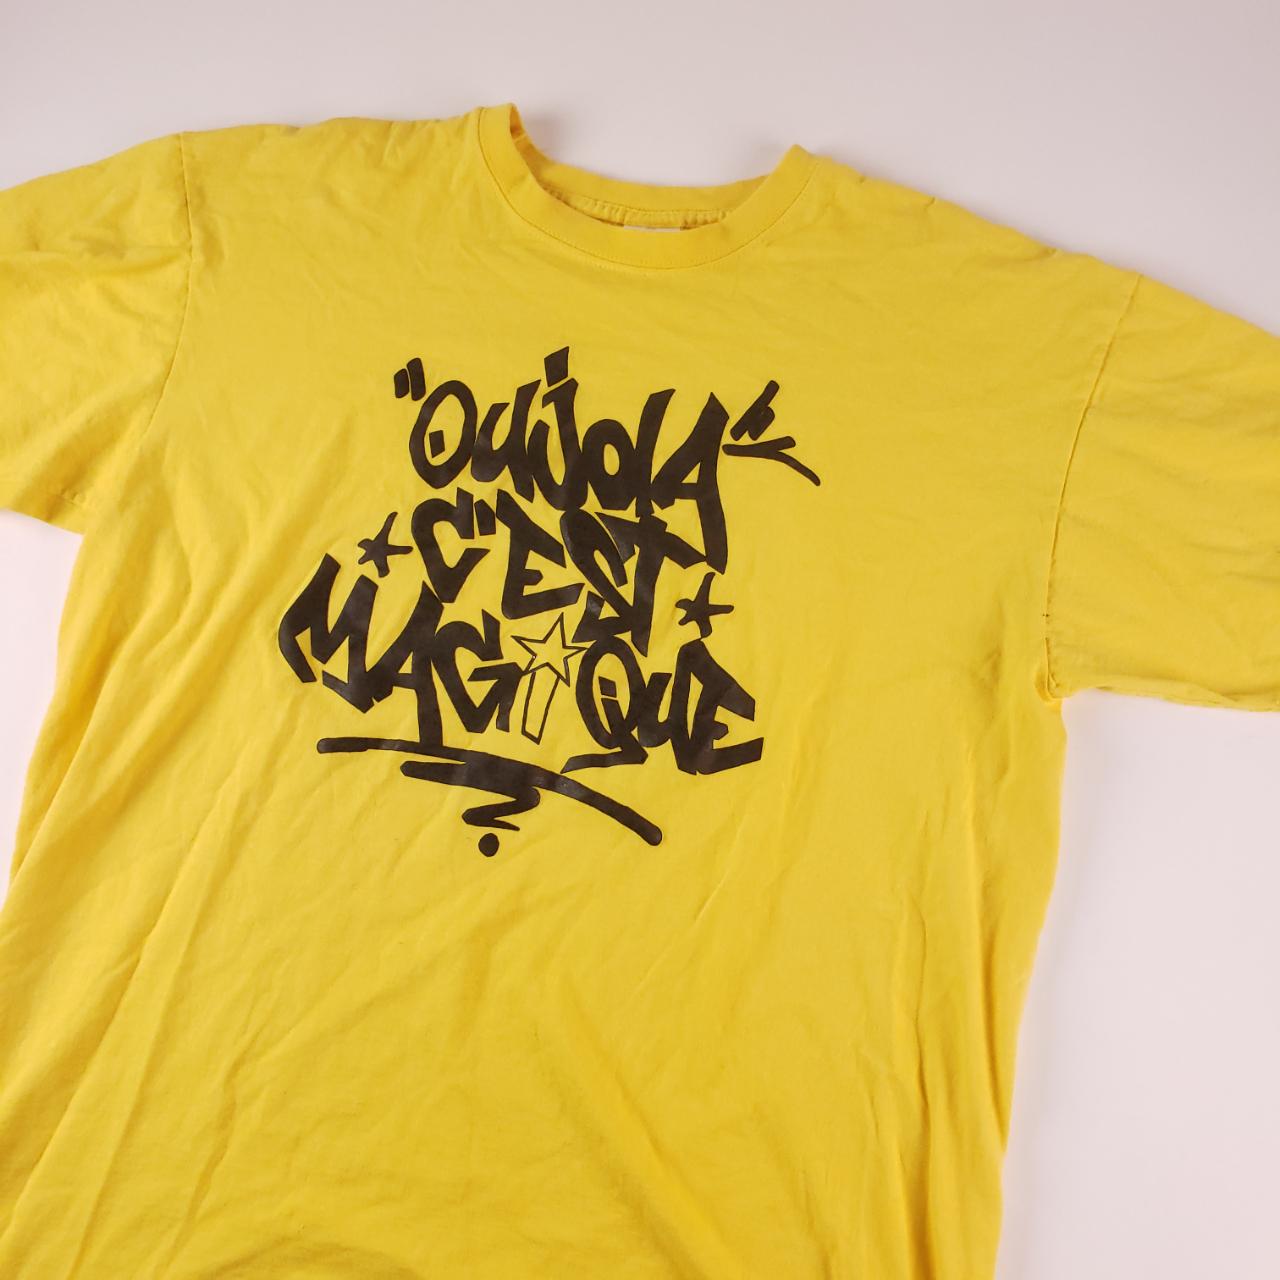 Oujda C'est Magique Yellow Spellout T-Shirt Mens sz... - Depop